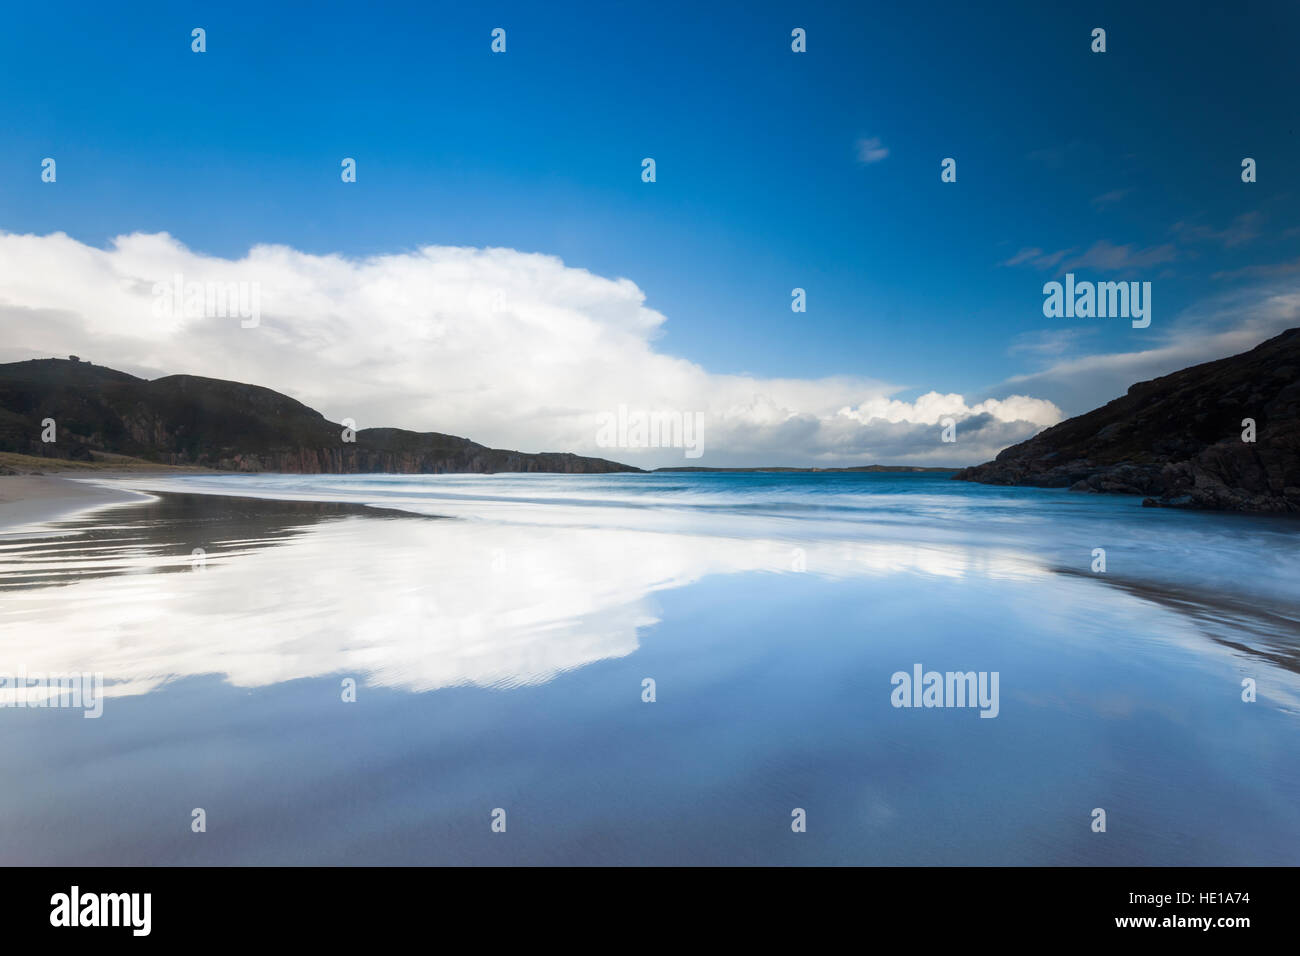 A view of Ceannabeinne Beach, Sutherland, Scotland. Stock Photo